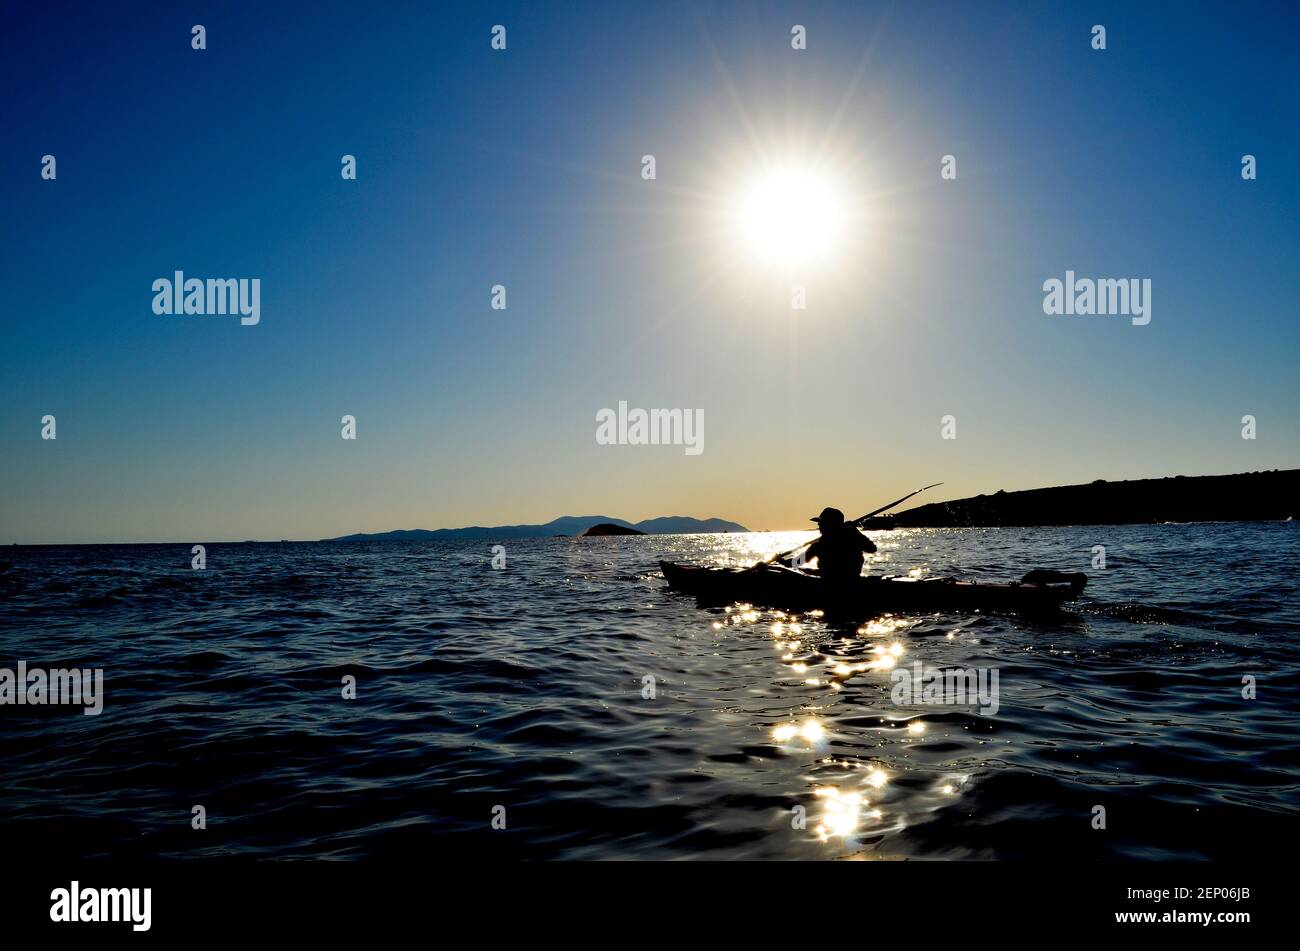 Kayak in mare durante il tour in bicicletta nella regione dell'isola dalmata della Croazia. Foto Stock